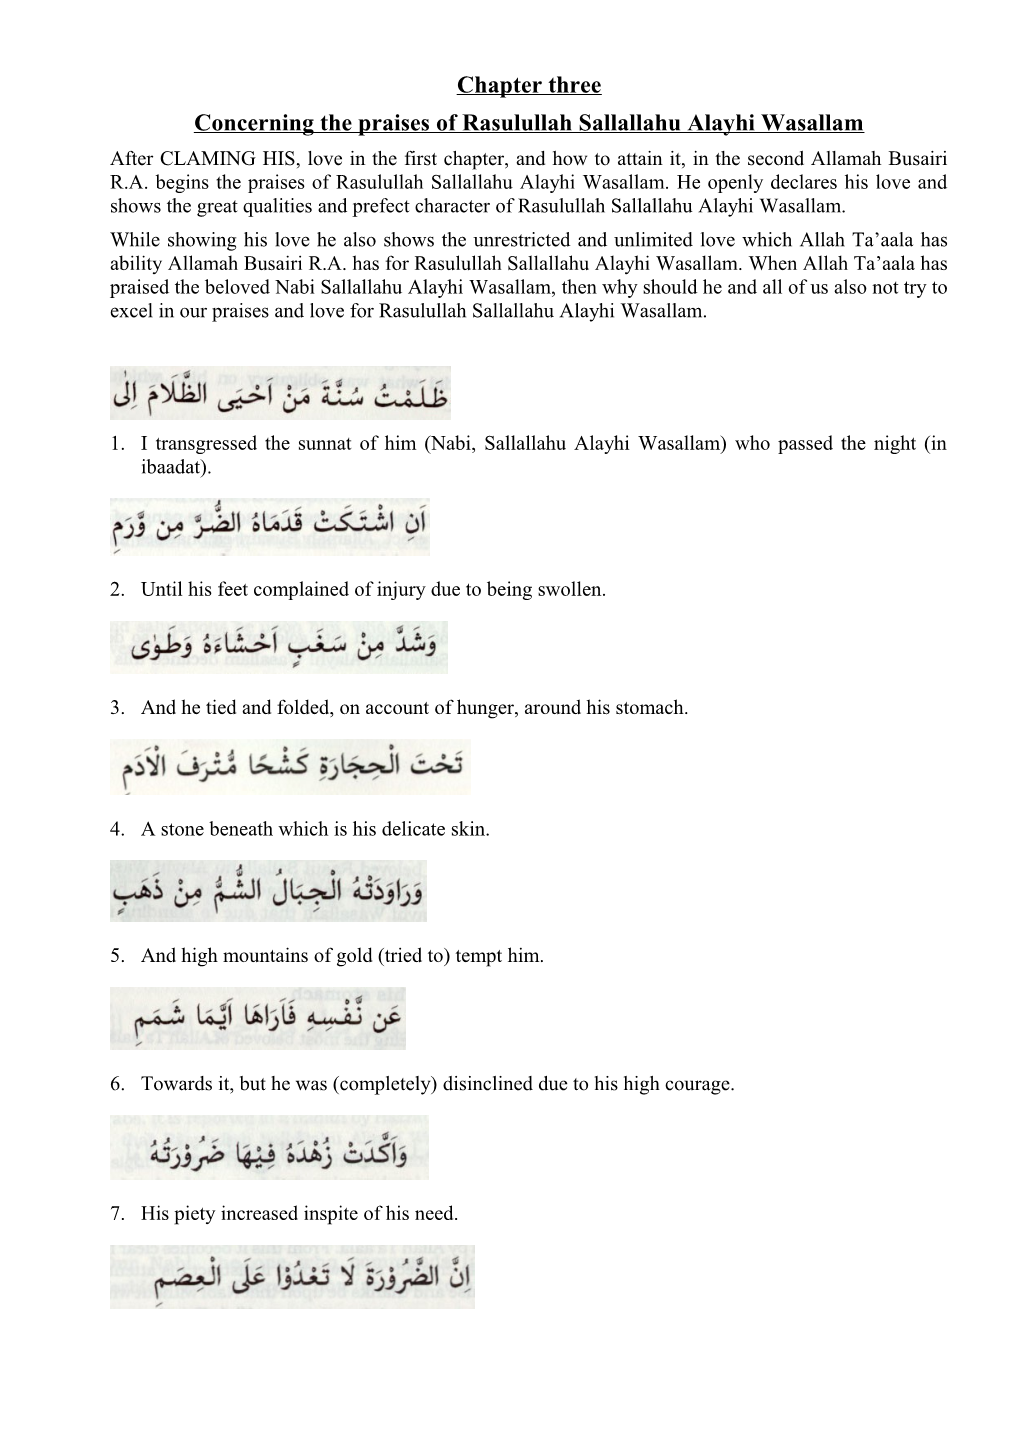 Concerning the Praises of Rasulullah Sallallahu Alayhi Wasallam